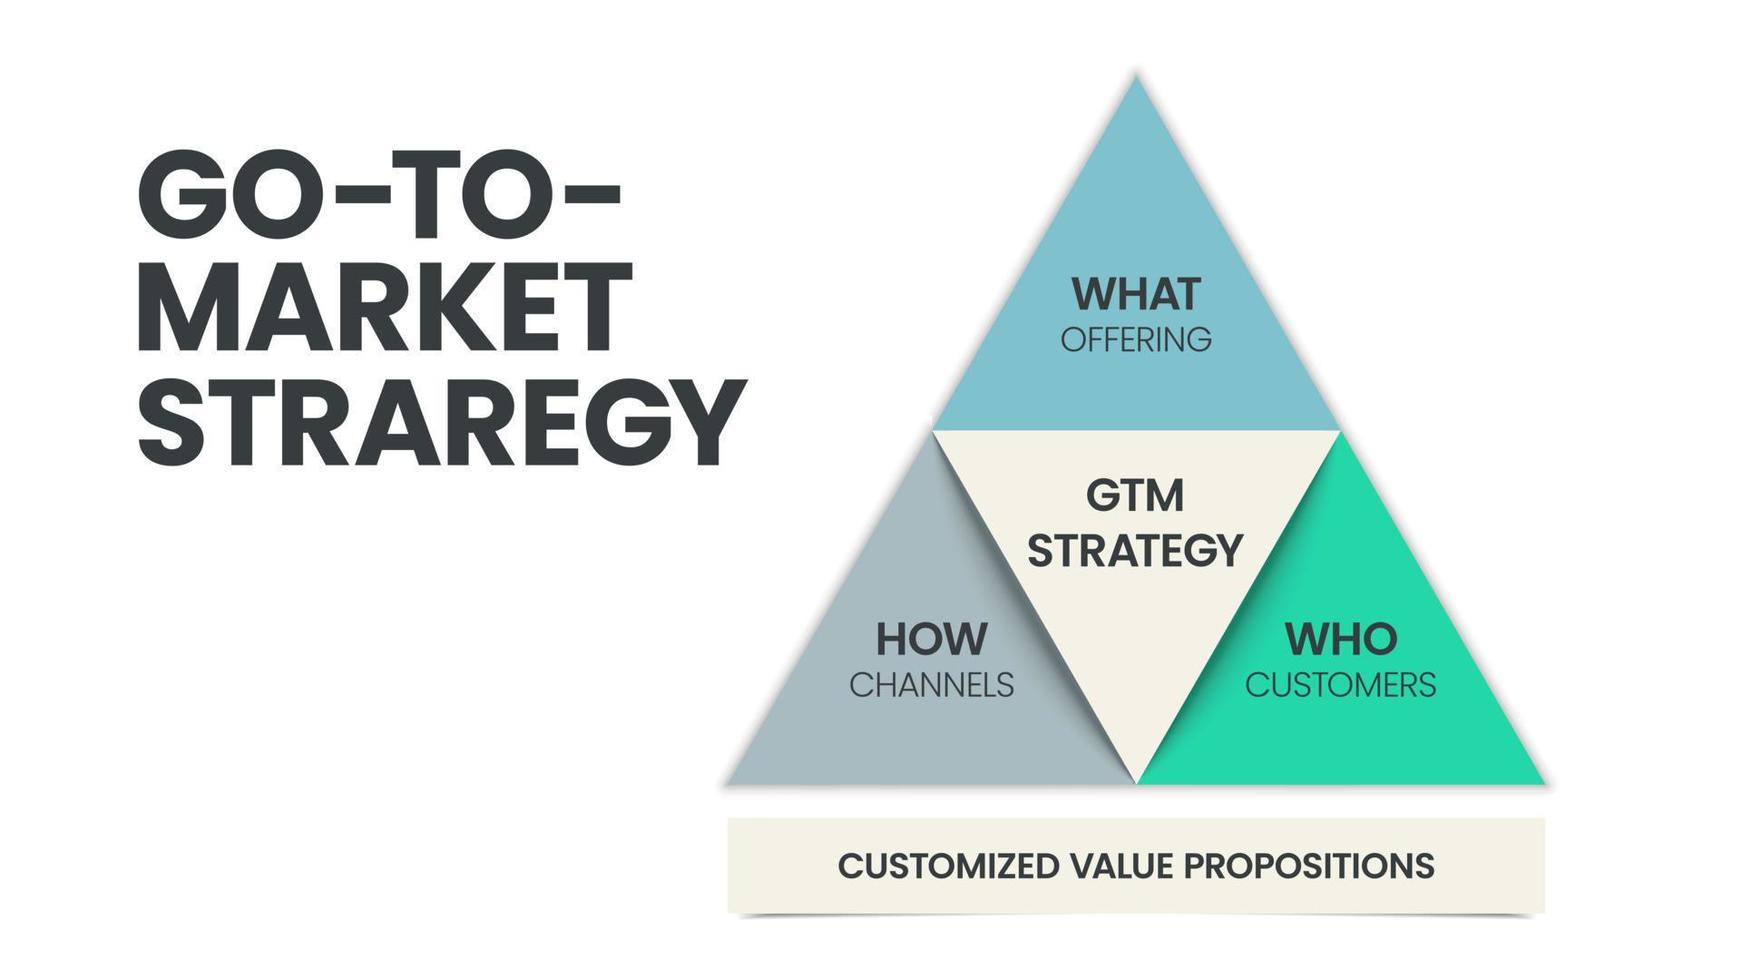 gtm o la estrategia de comercialización y la plantilla de infografía piramidal del plan tiene 3 pasos para analizar, como qué - oferta, quién - clientes y cómo - canales. diapositiva de negocios y marketing para presentación. vector